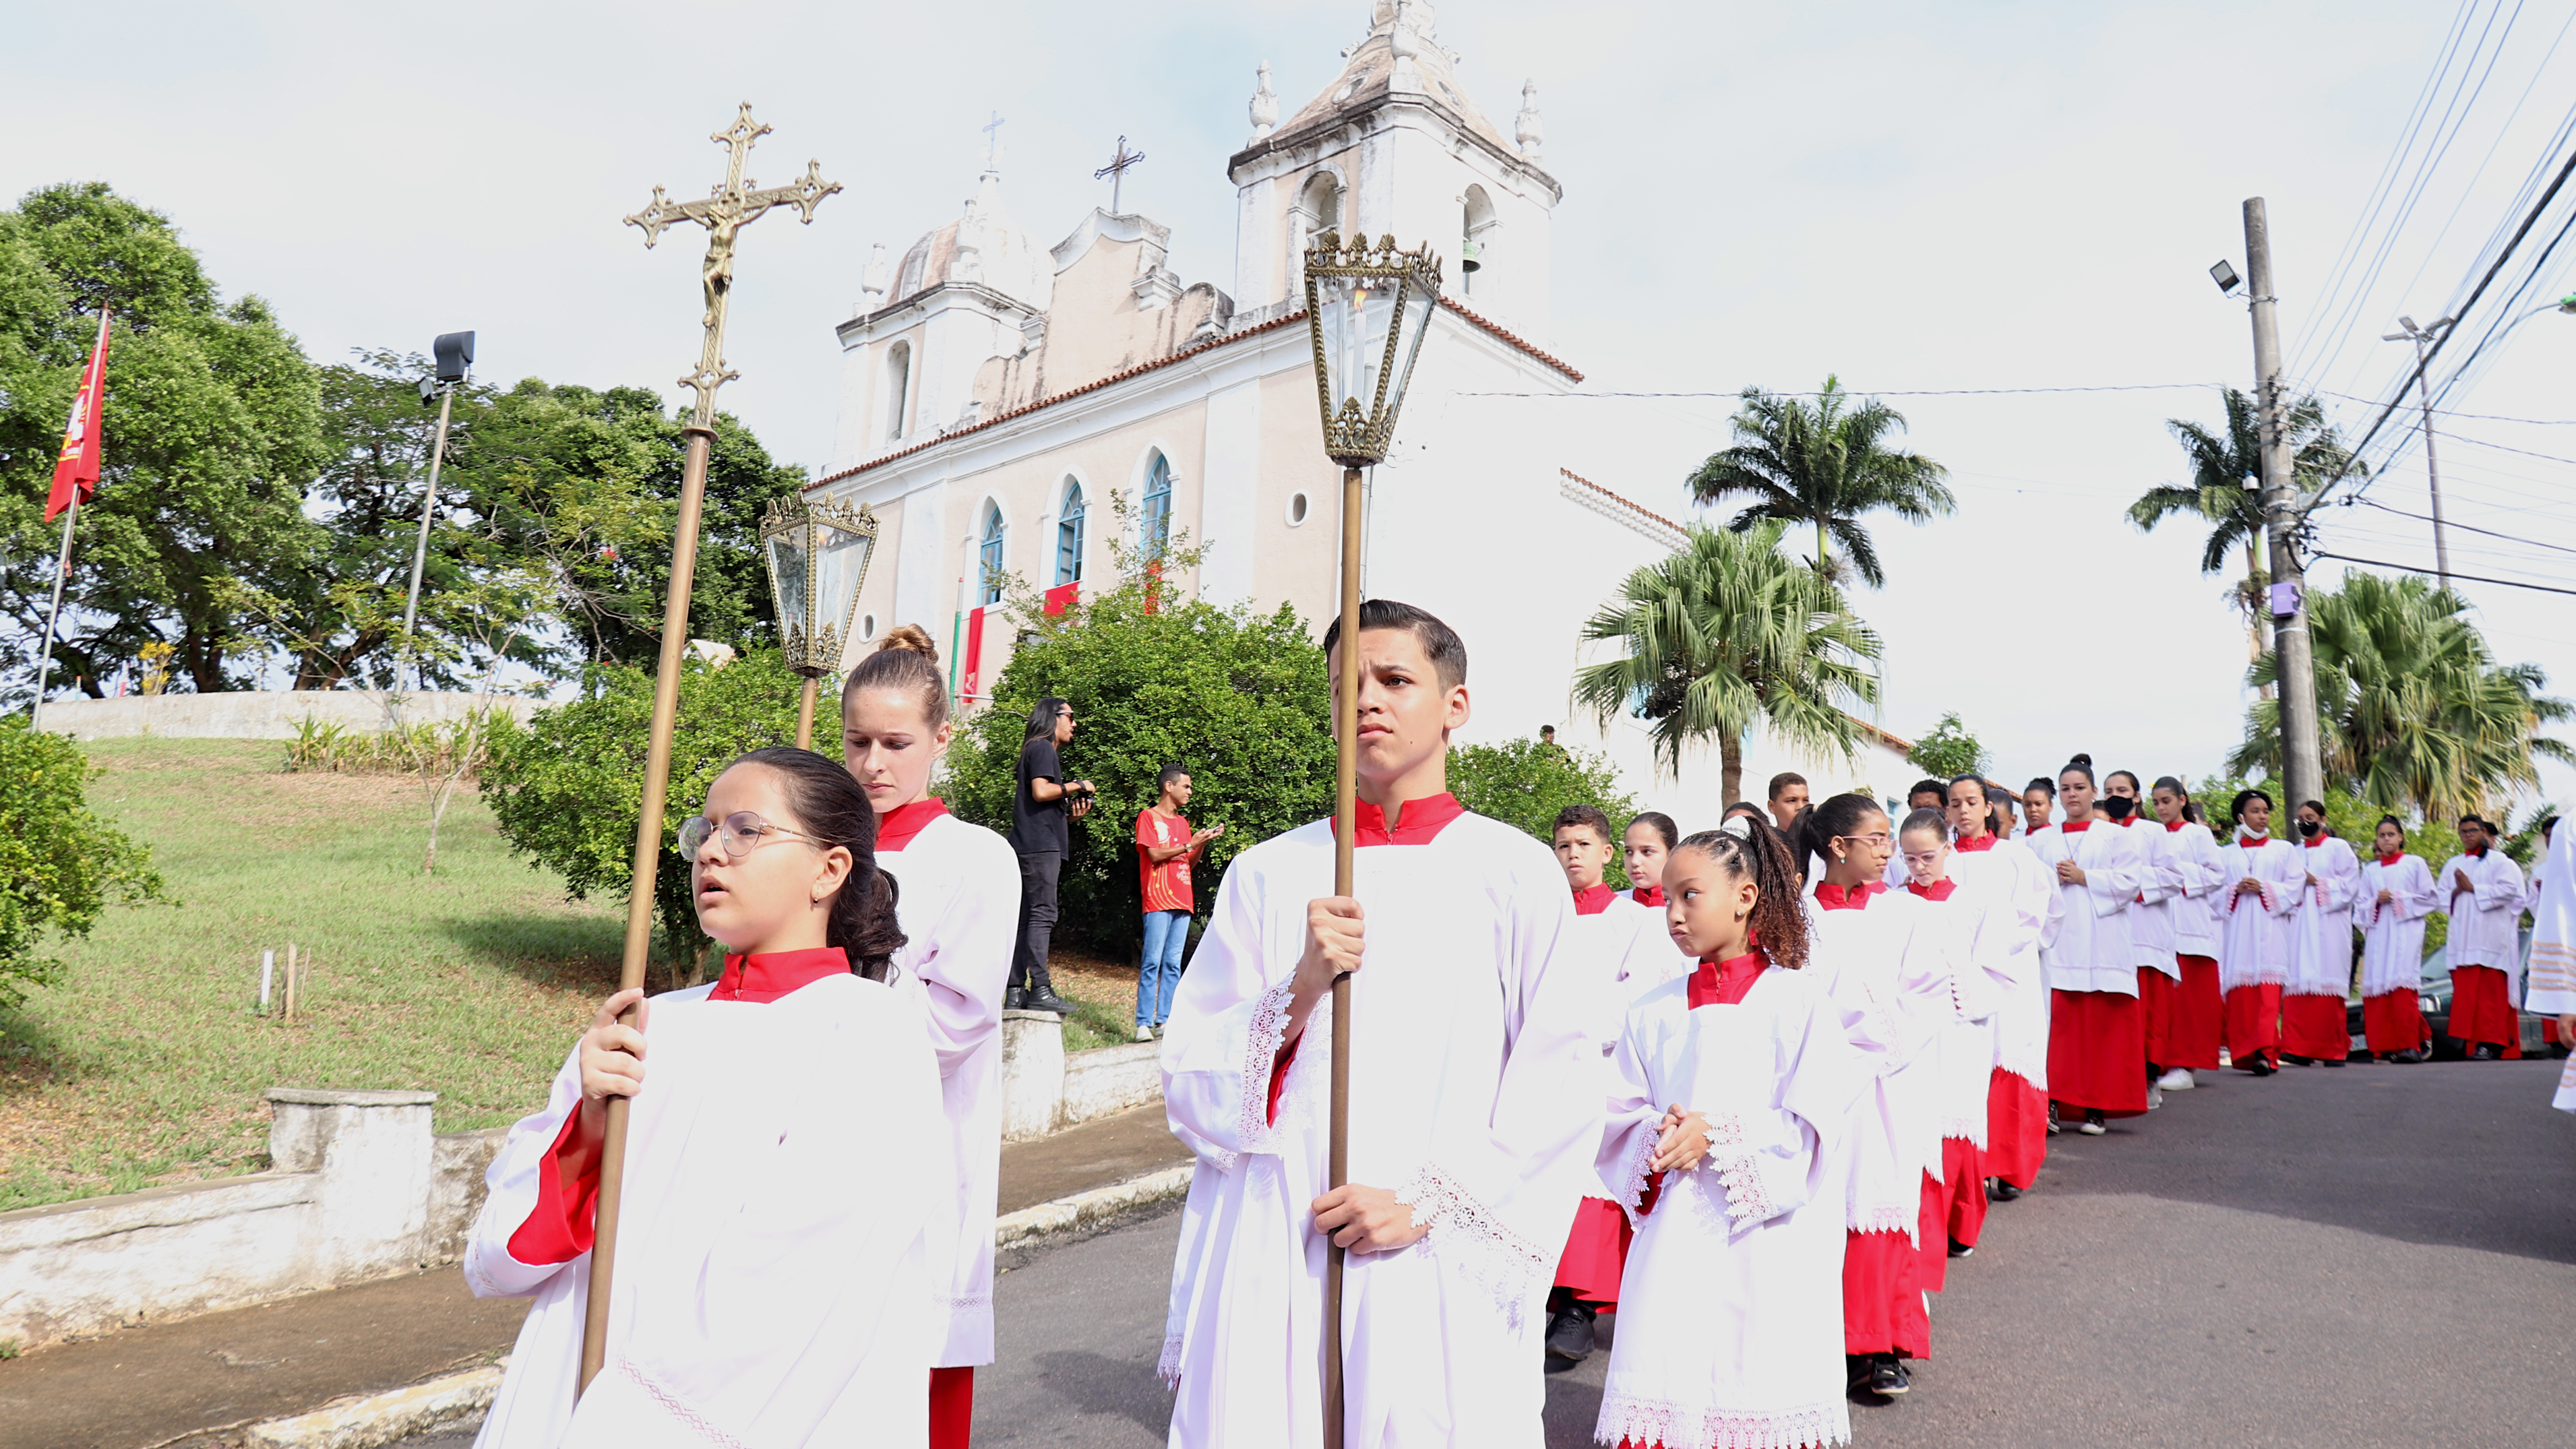 Festa do Divino Espírito Santo reúne centenas de pessoas em missas e celebrações